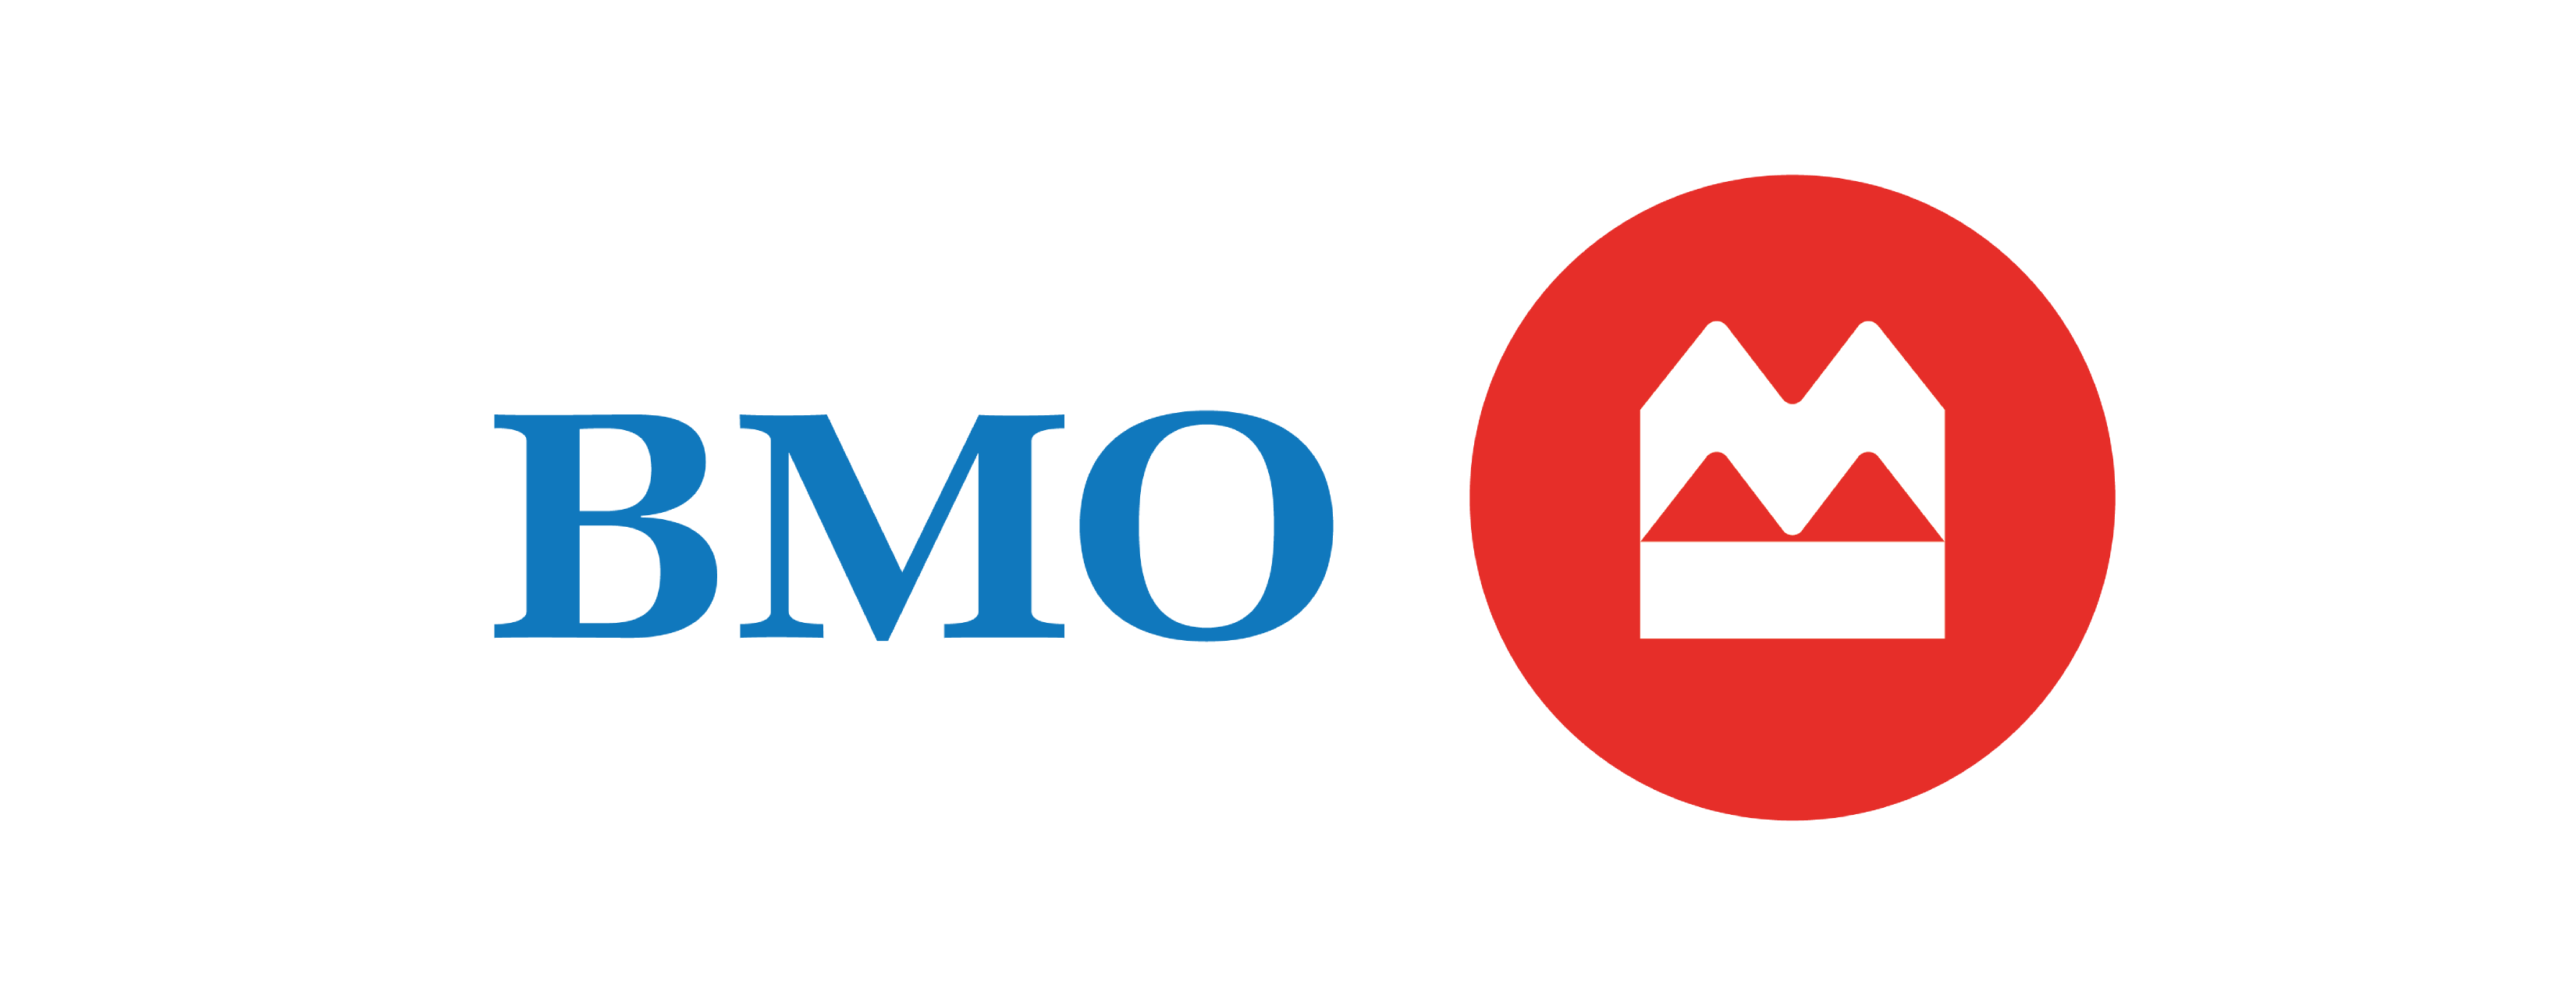 Logo_BMO_Ecran-2